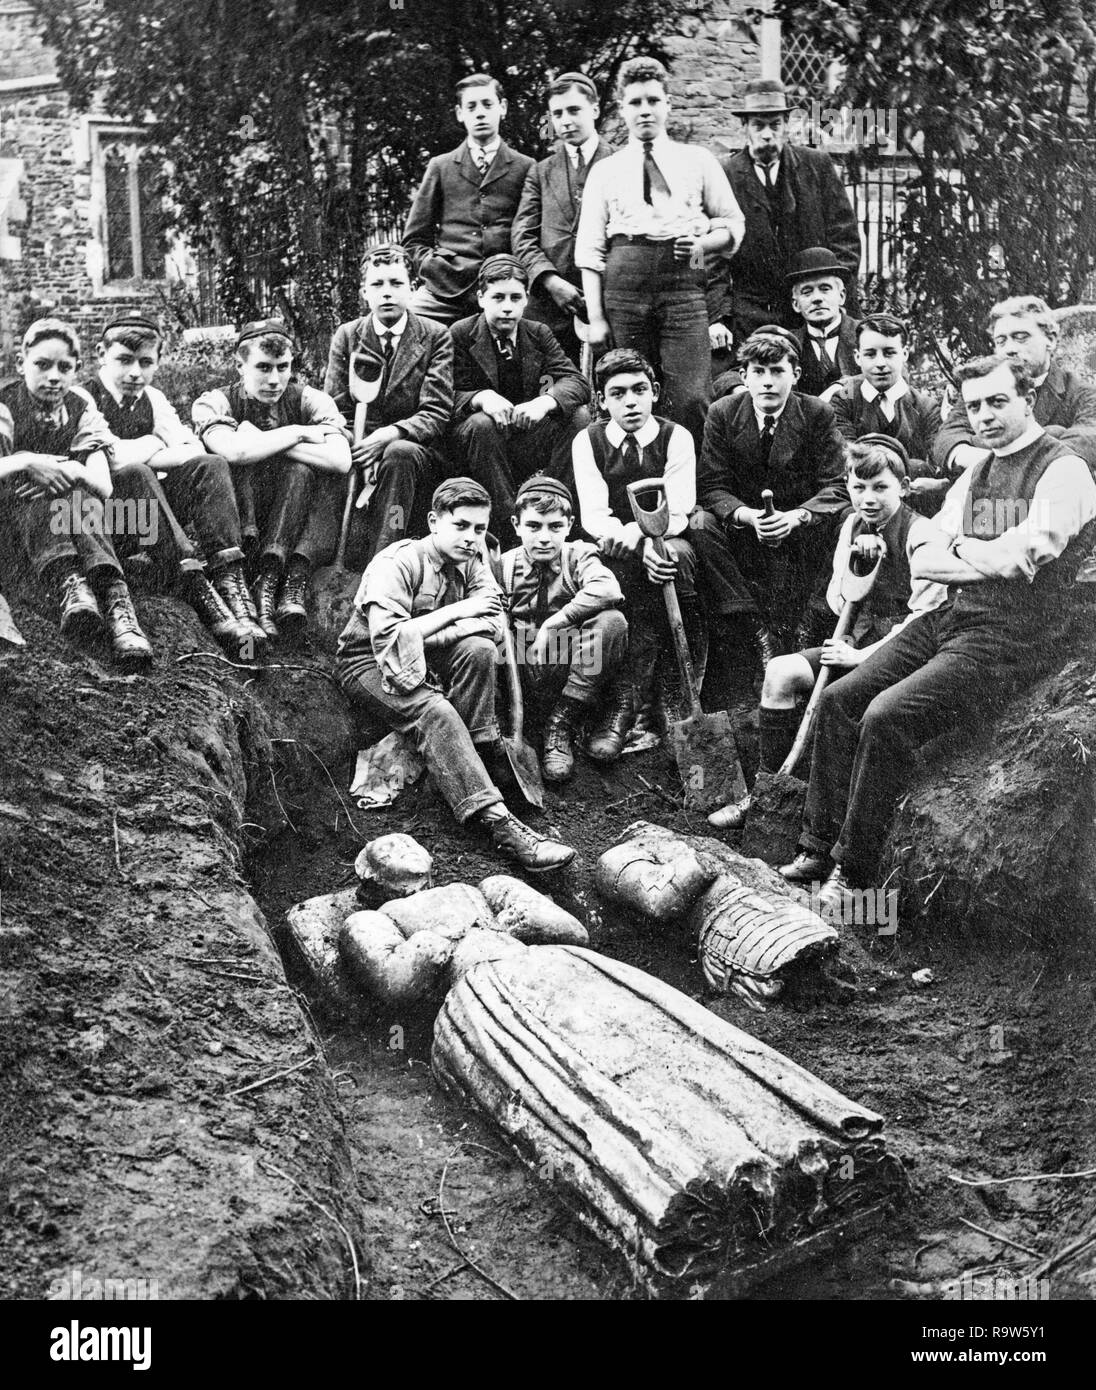 Photographie prise en 1918 dans le village de Millbrook, dans le Bedfordshire, Angleterre. La photographie montre un groupe de personnes, nombre de jeunes hommes, et quelques effigies trouvés enterrés dans le cimetière à Millbrook. Banque D'Images